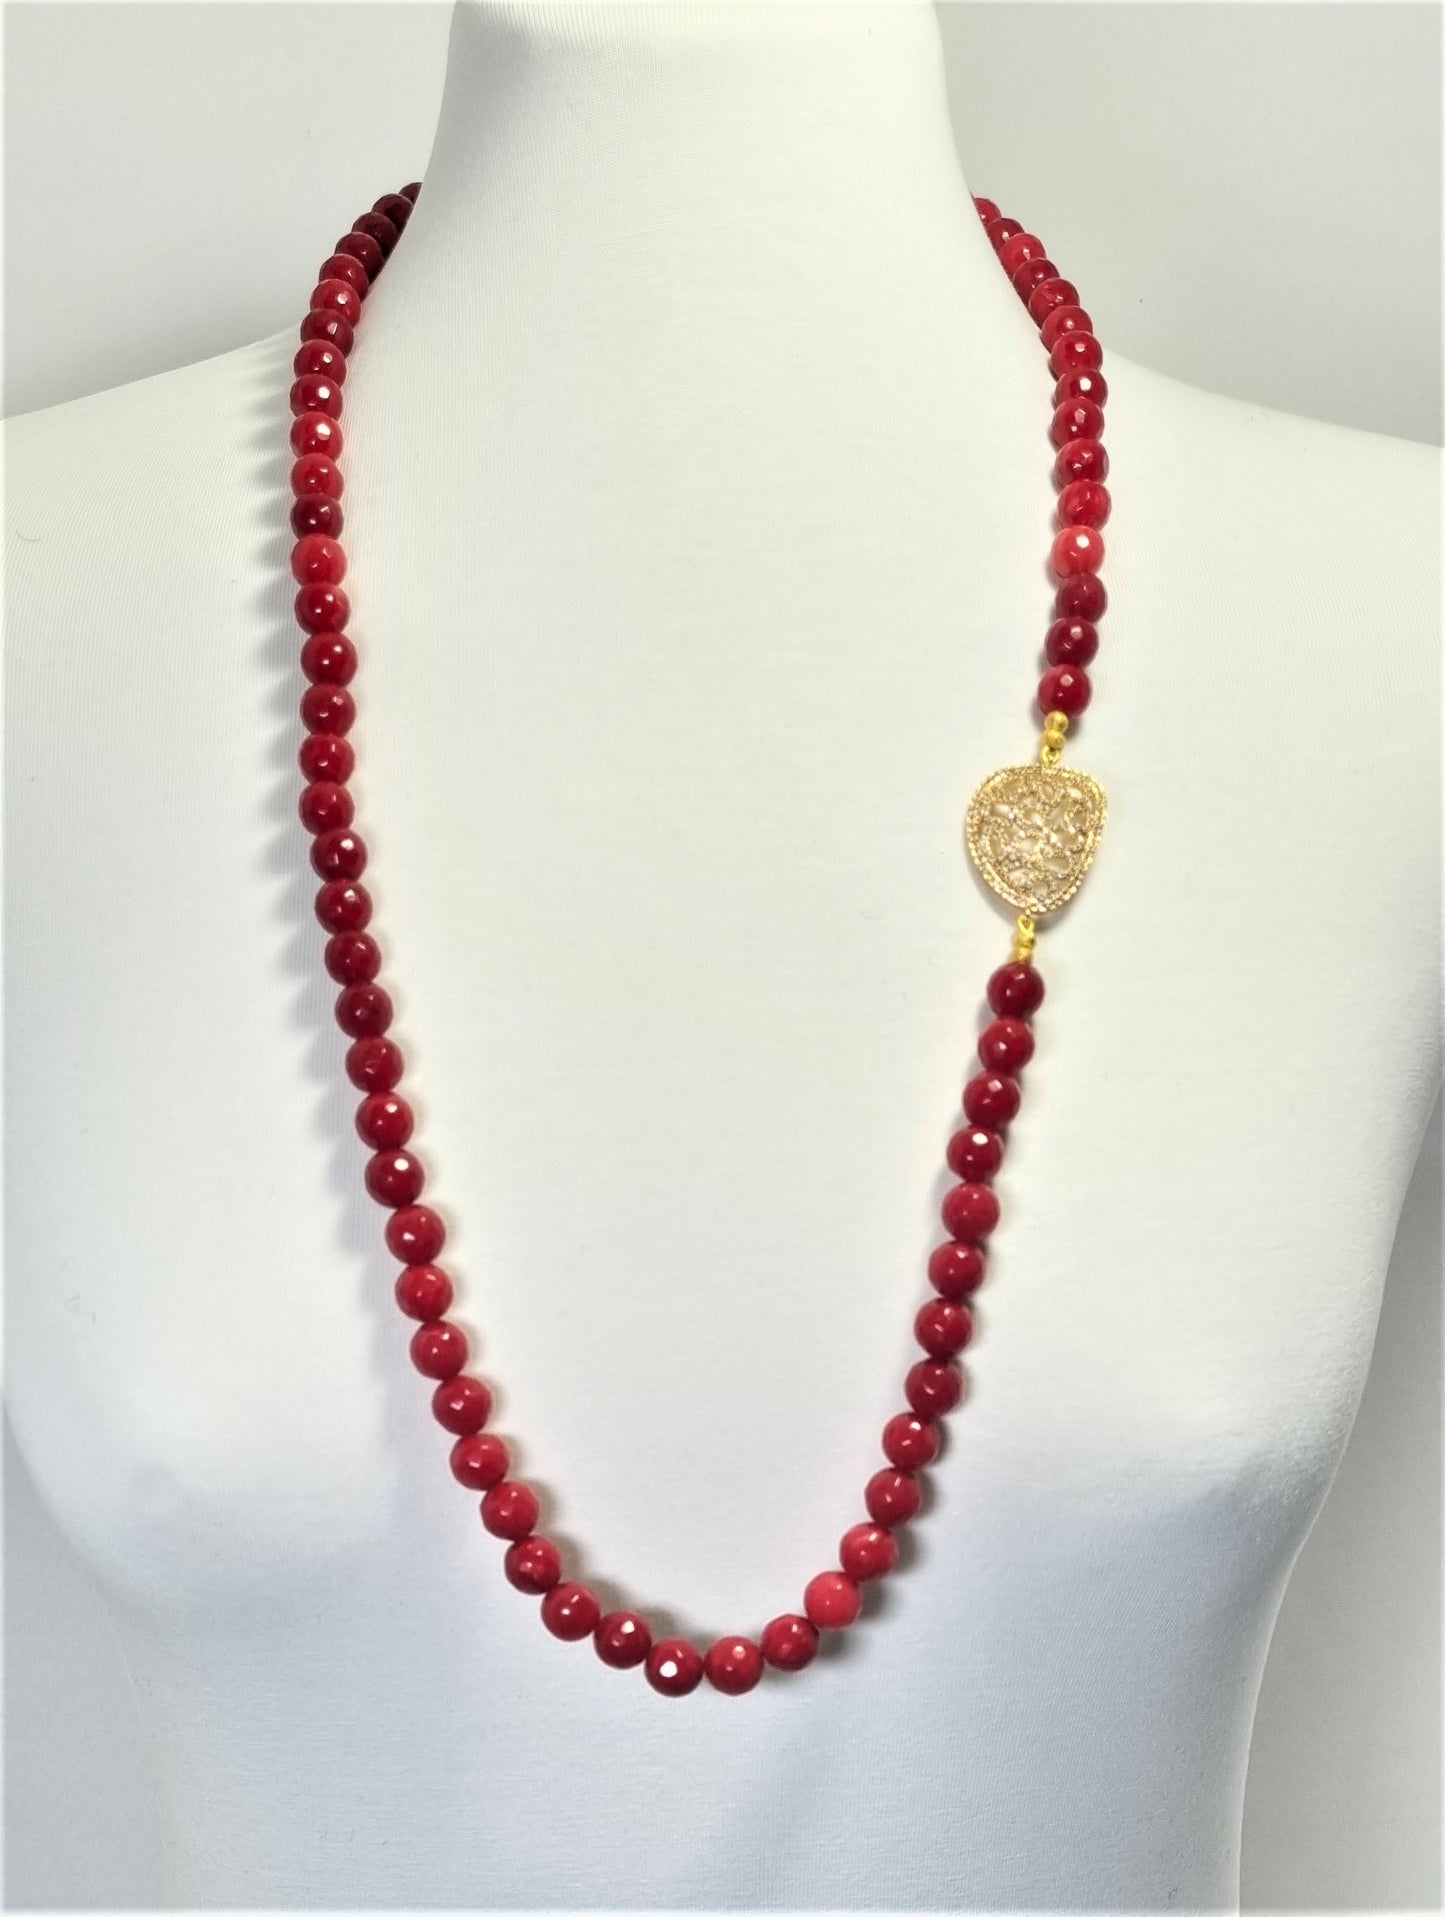 Collana I ROSSI .040 filo perle sfaccettate diaspro rosso elemento metallo dorato e strass.